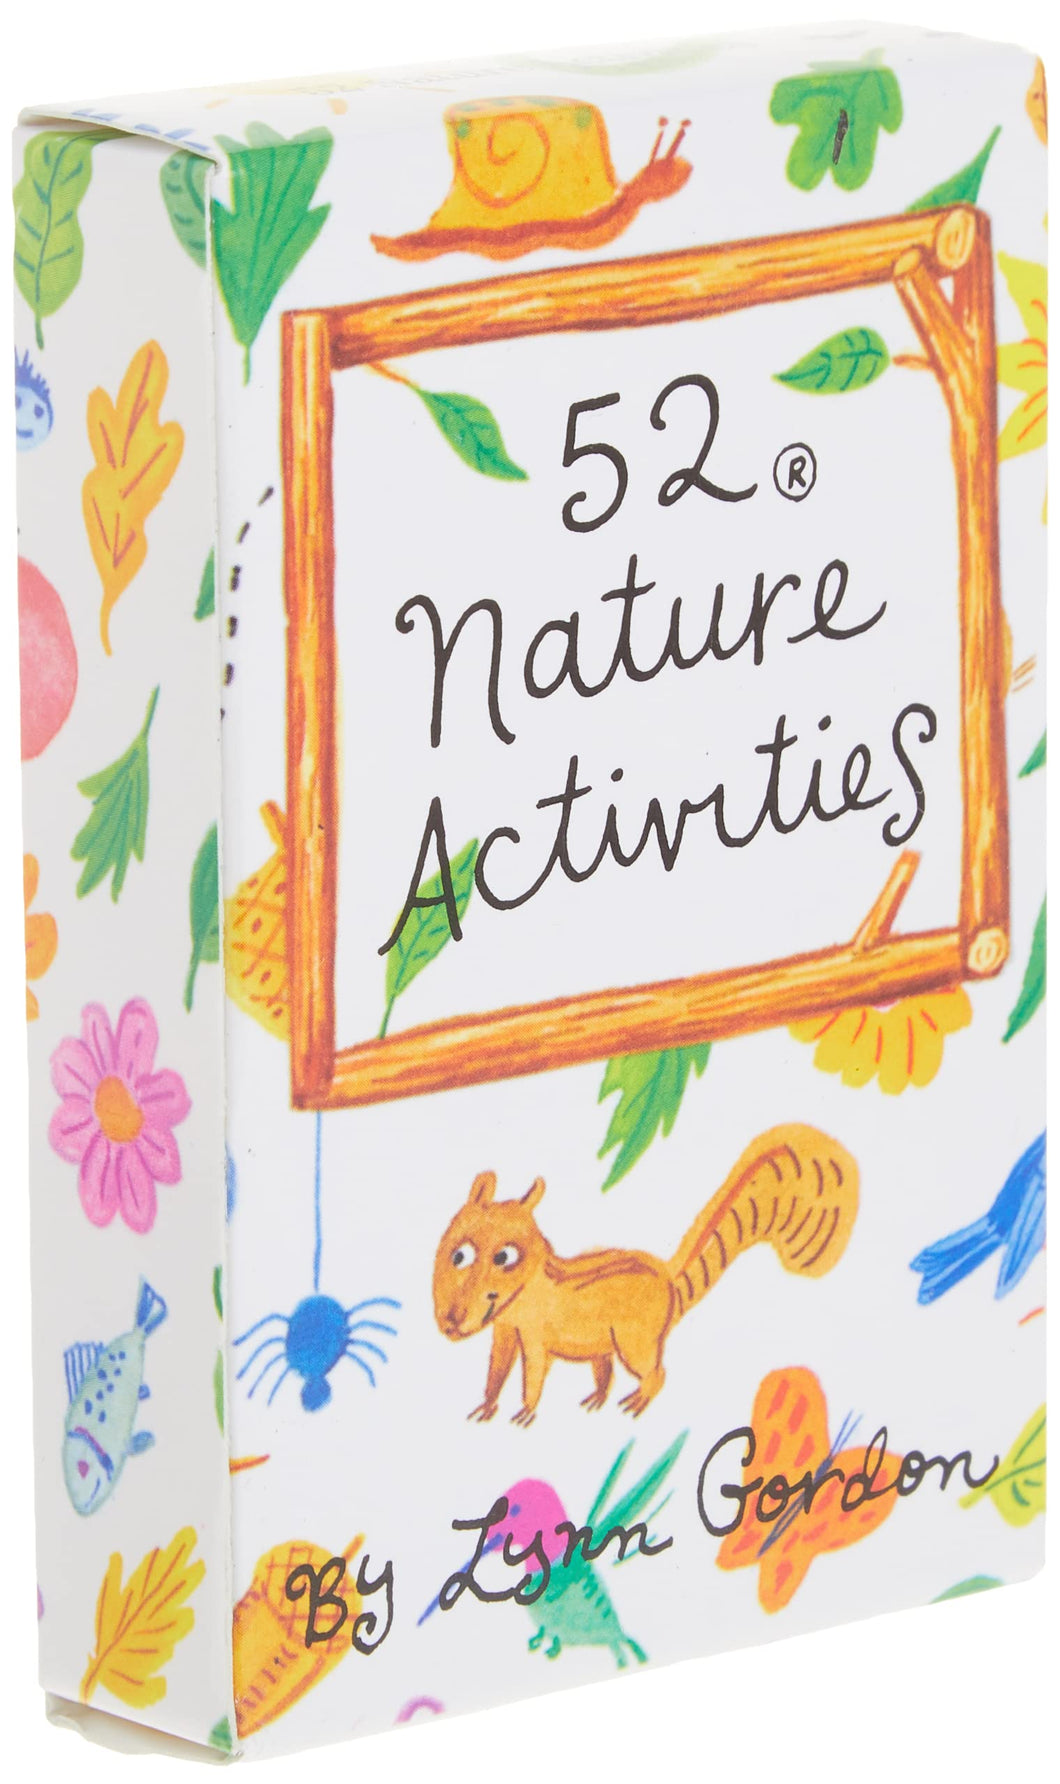 52 Nature Activities [Lynn Gordon & Karen Johnson]